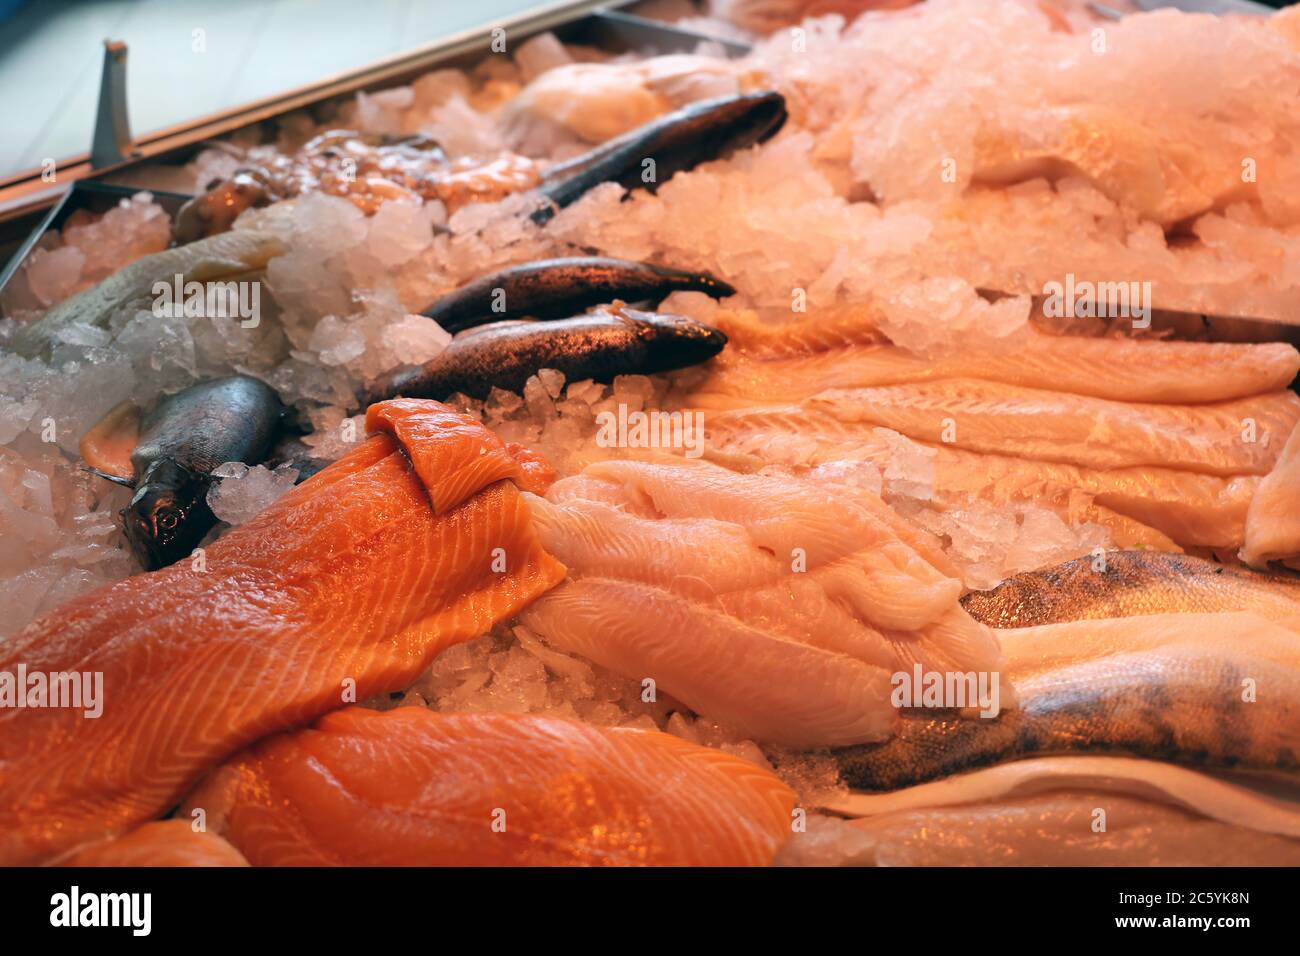 Nahaufnahme einer Fischtheke mit Fischen und Meeresfrüchten Stock Photo